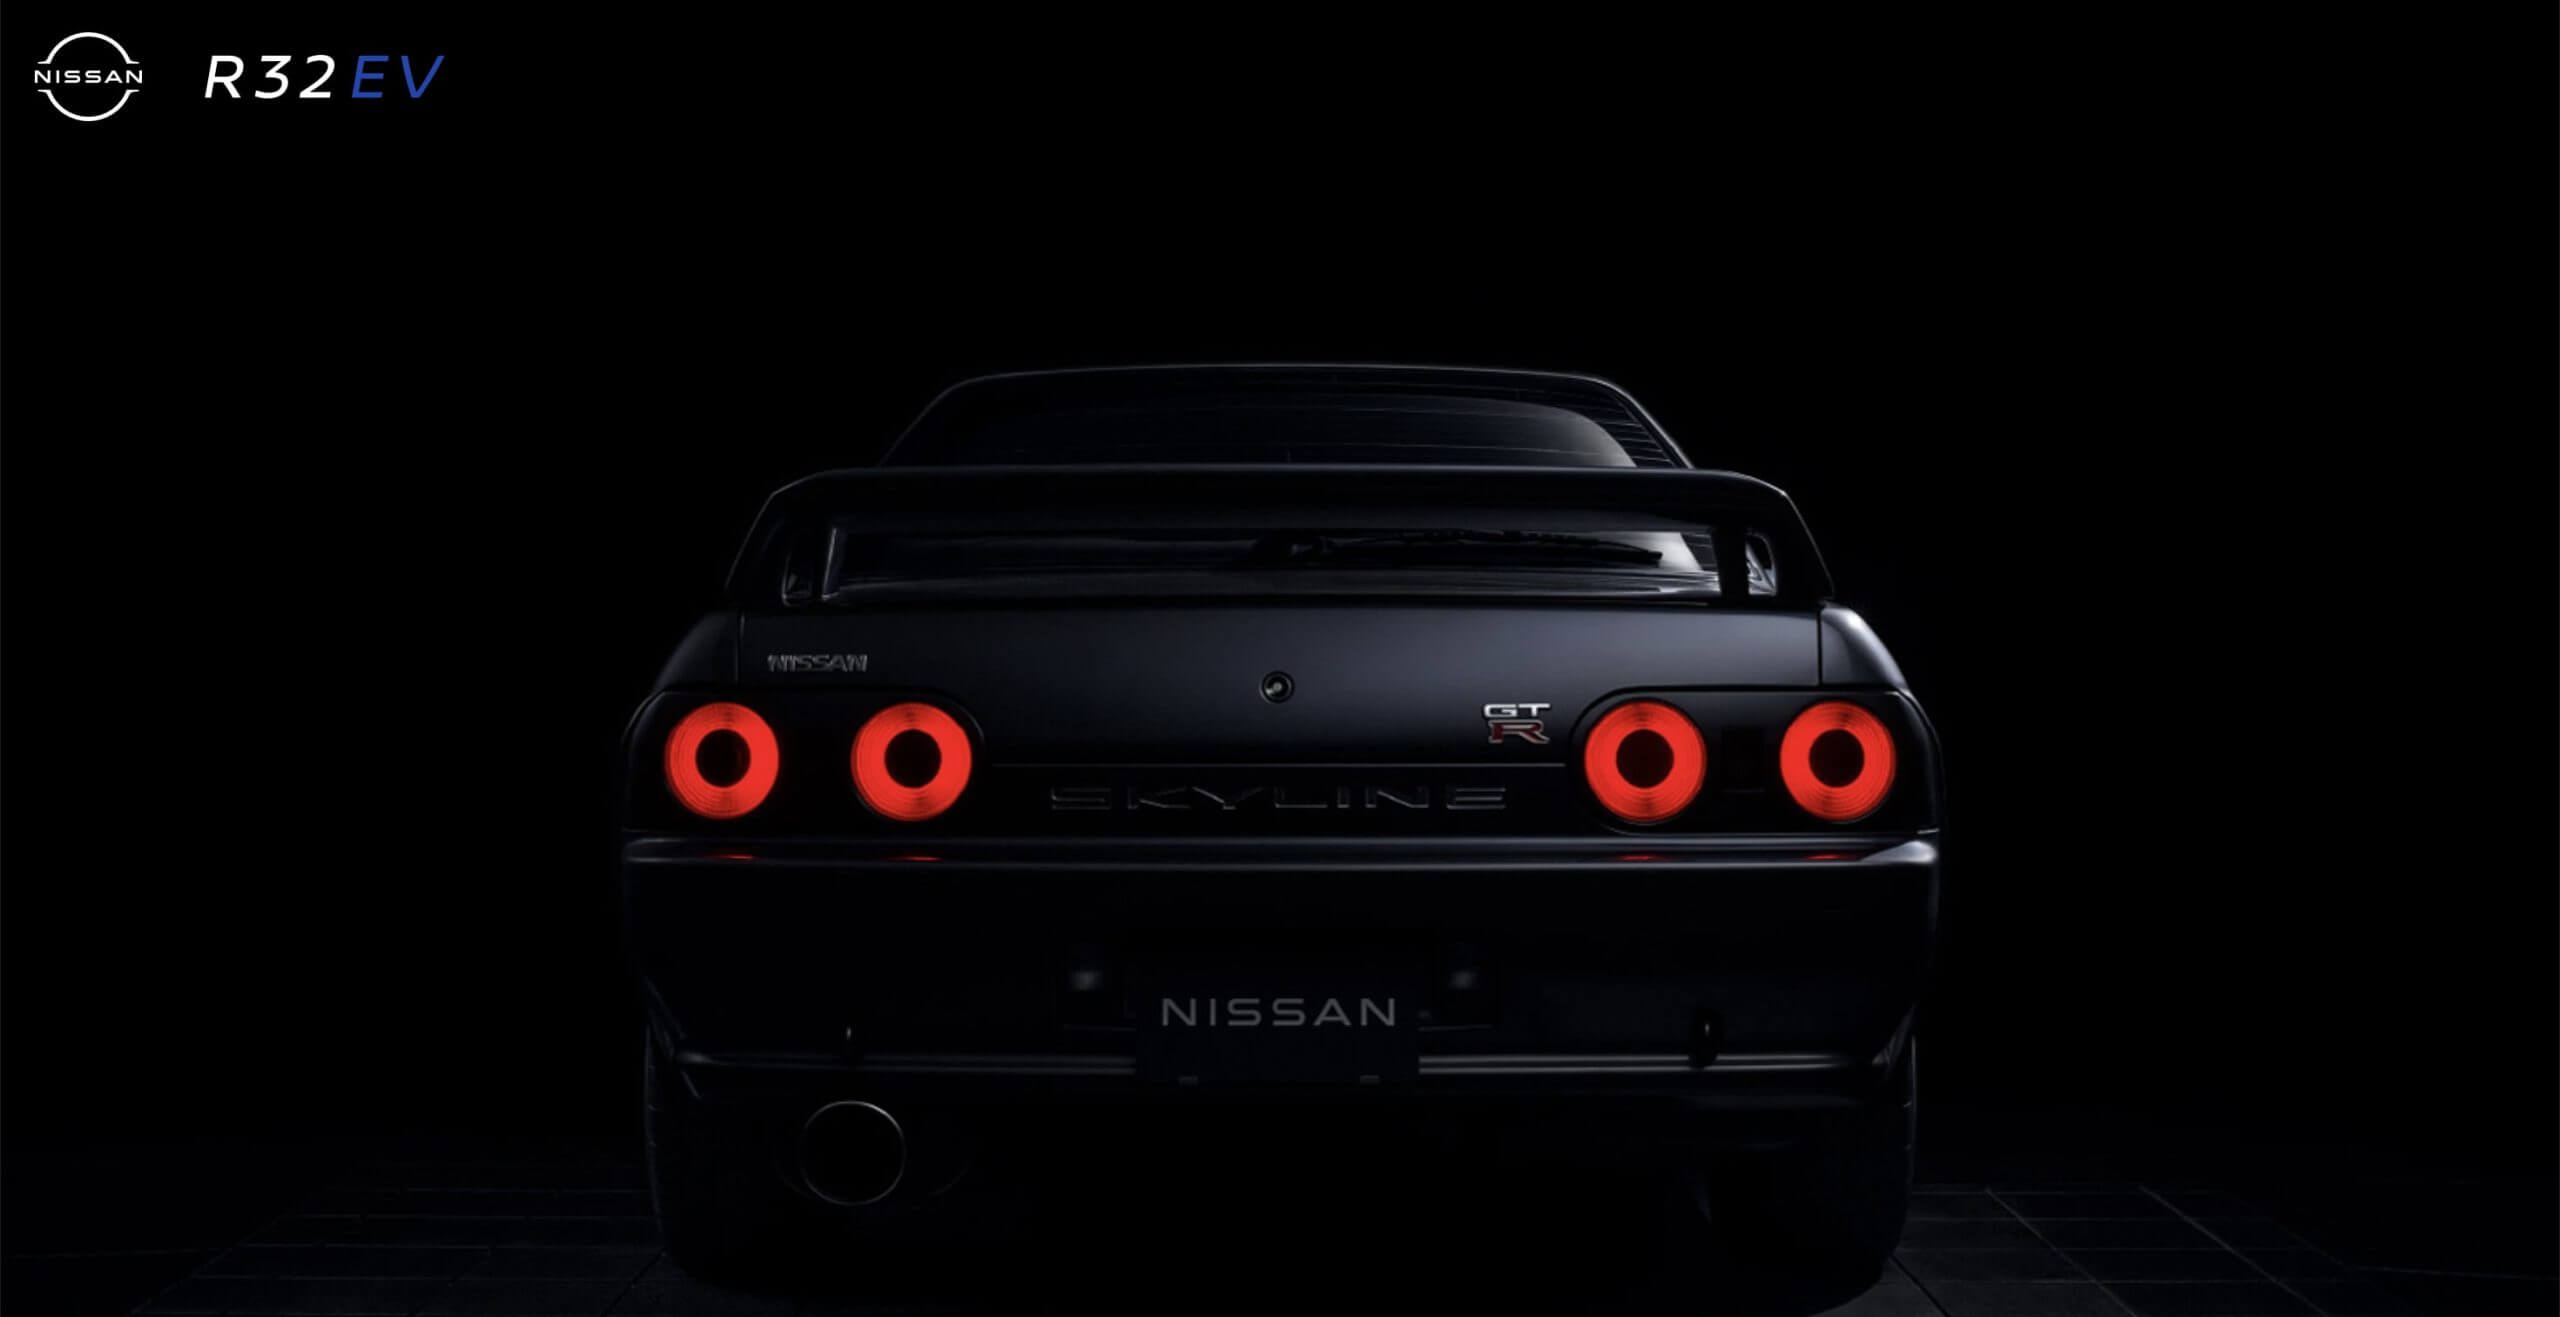 Nissan elektrikli Skyline GTR ‘Godzilla’ ile dalga geçiyor